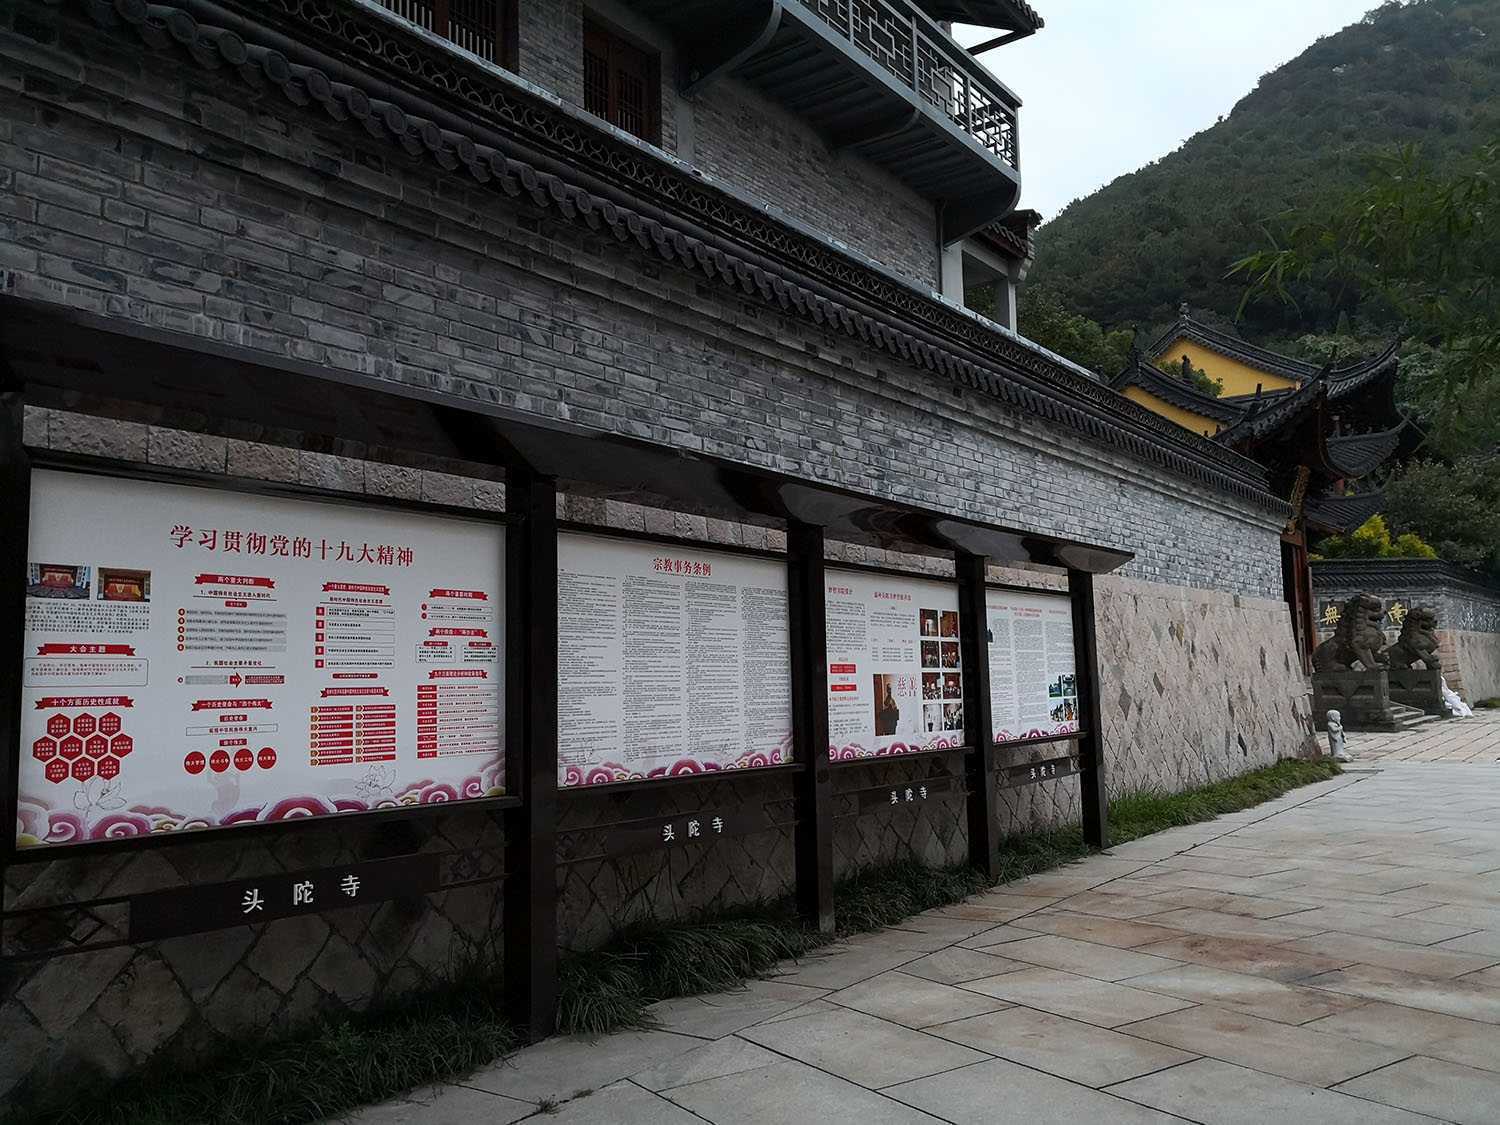 浙江省温州市佛教、道教共同发起建立爱国教育和法制教育阵地的倡议